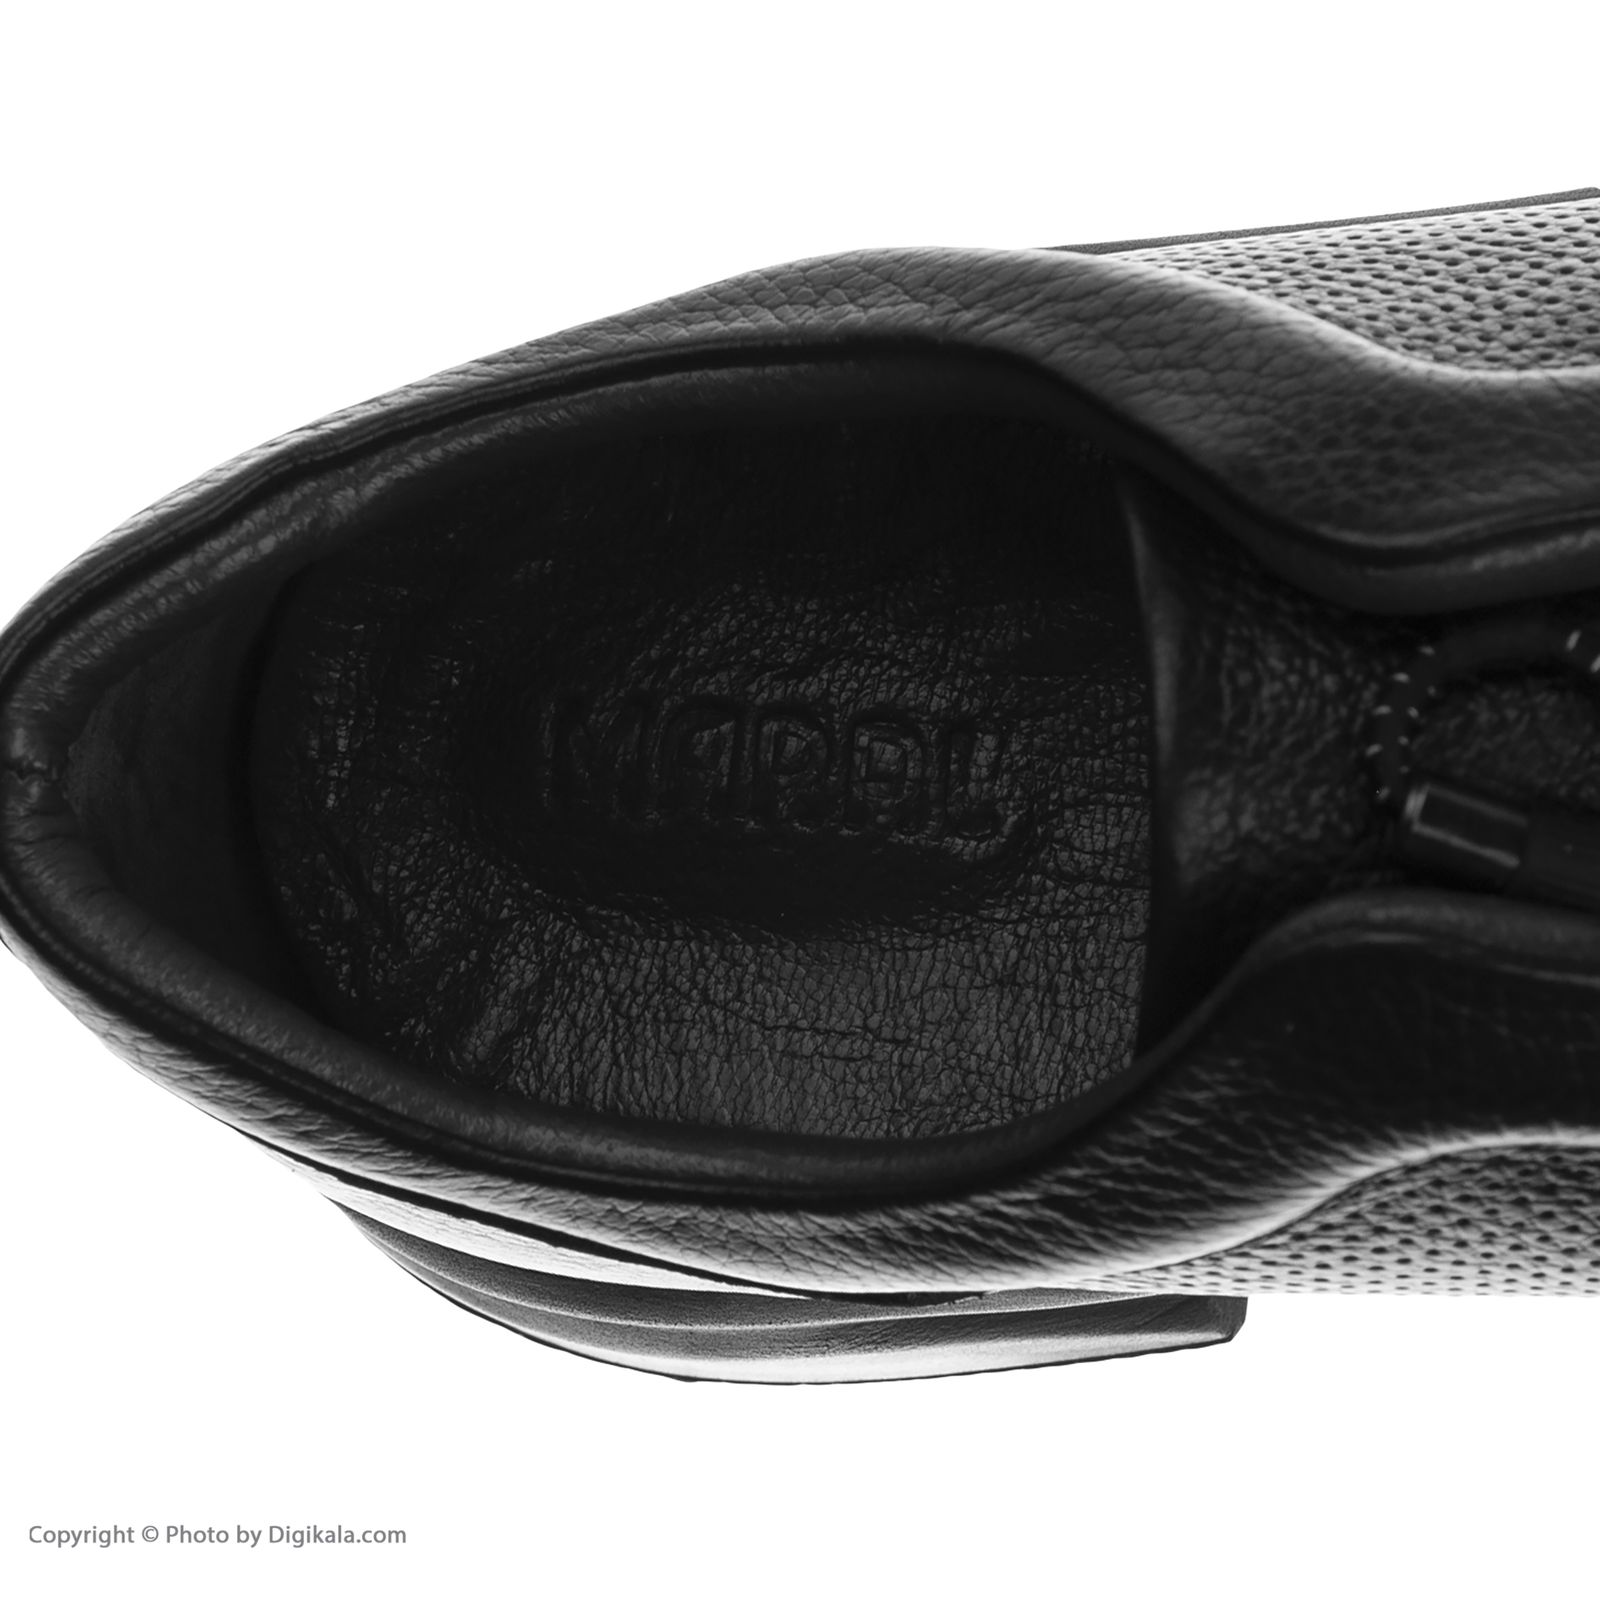 کفش روزمره زنانه مارال چرم مدل پاتریسیا 1035-Black -  - 5